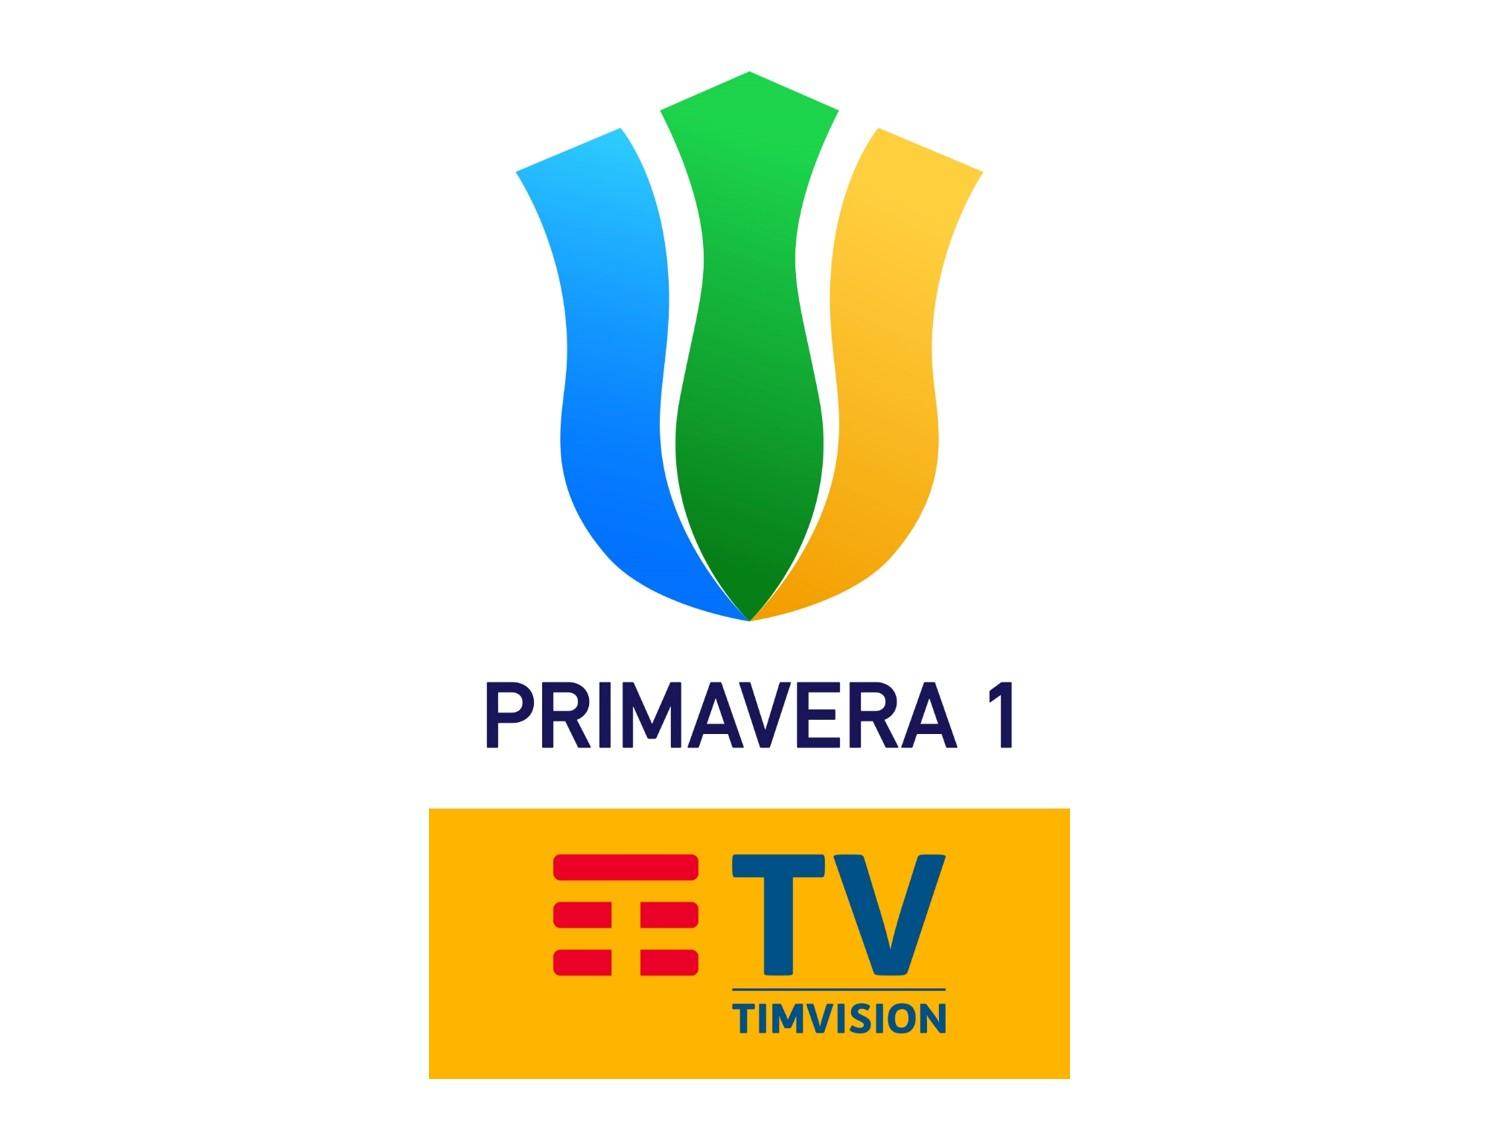 Sportitalia Campionato Primavera 1 TimVision 11a Giornata e Telecronisti Calcio Estero